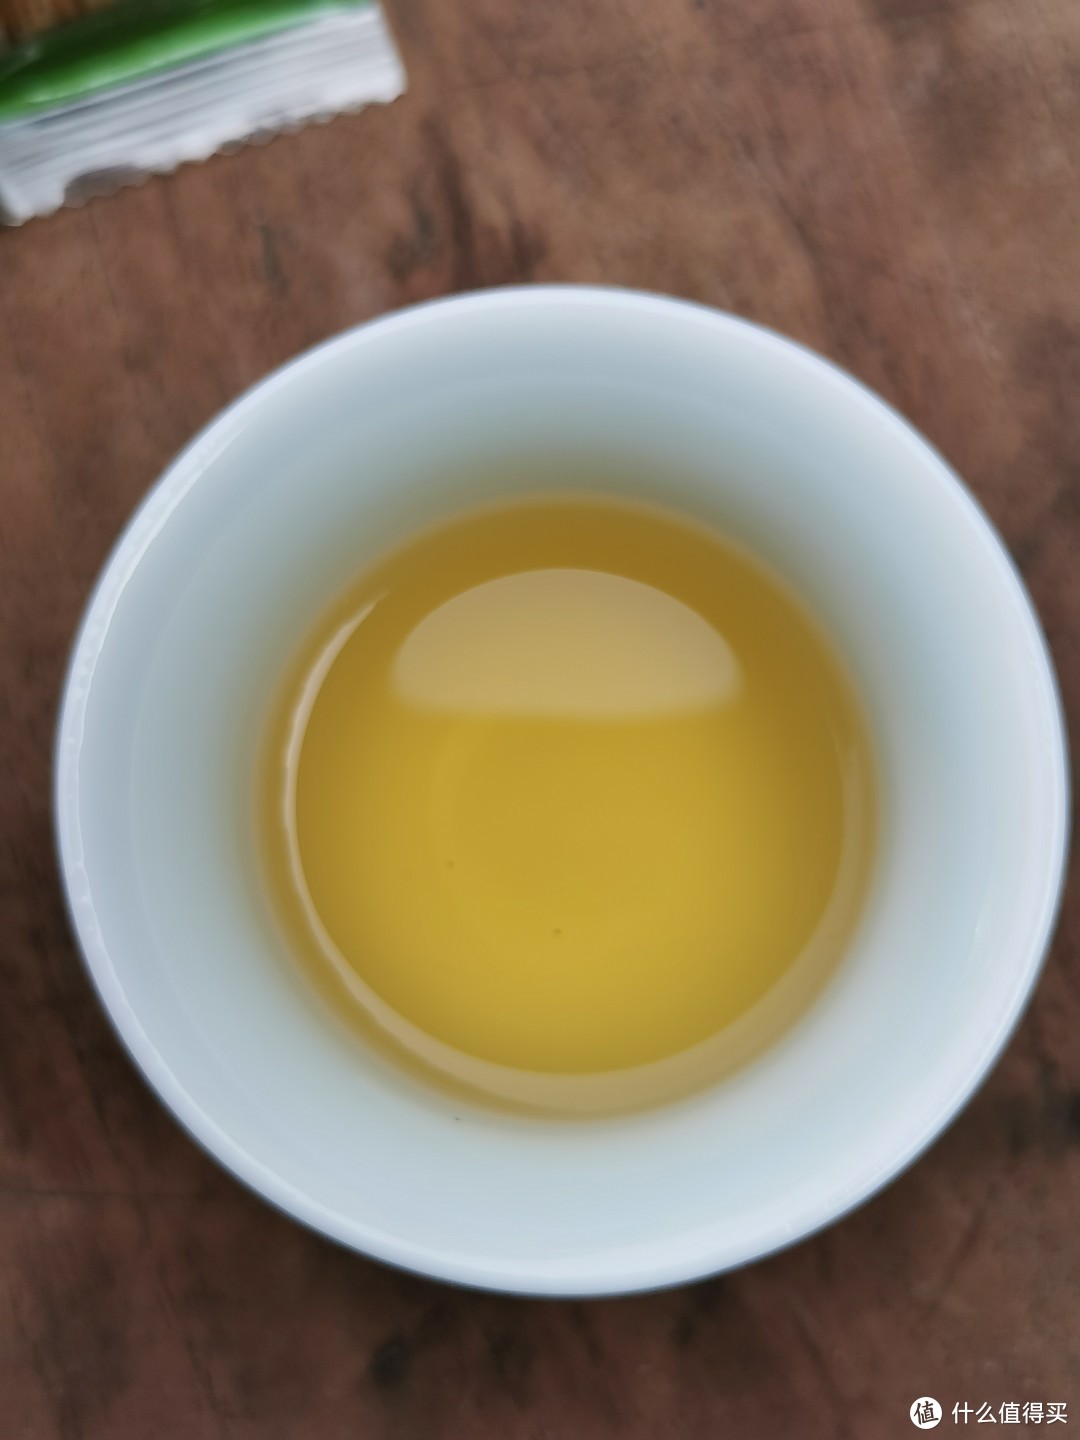 茶汤黄亮，油润粘稠，喉韵舒爽，马汉清香